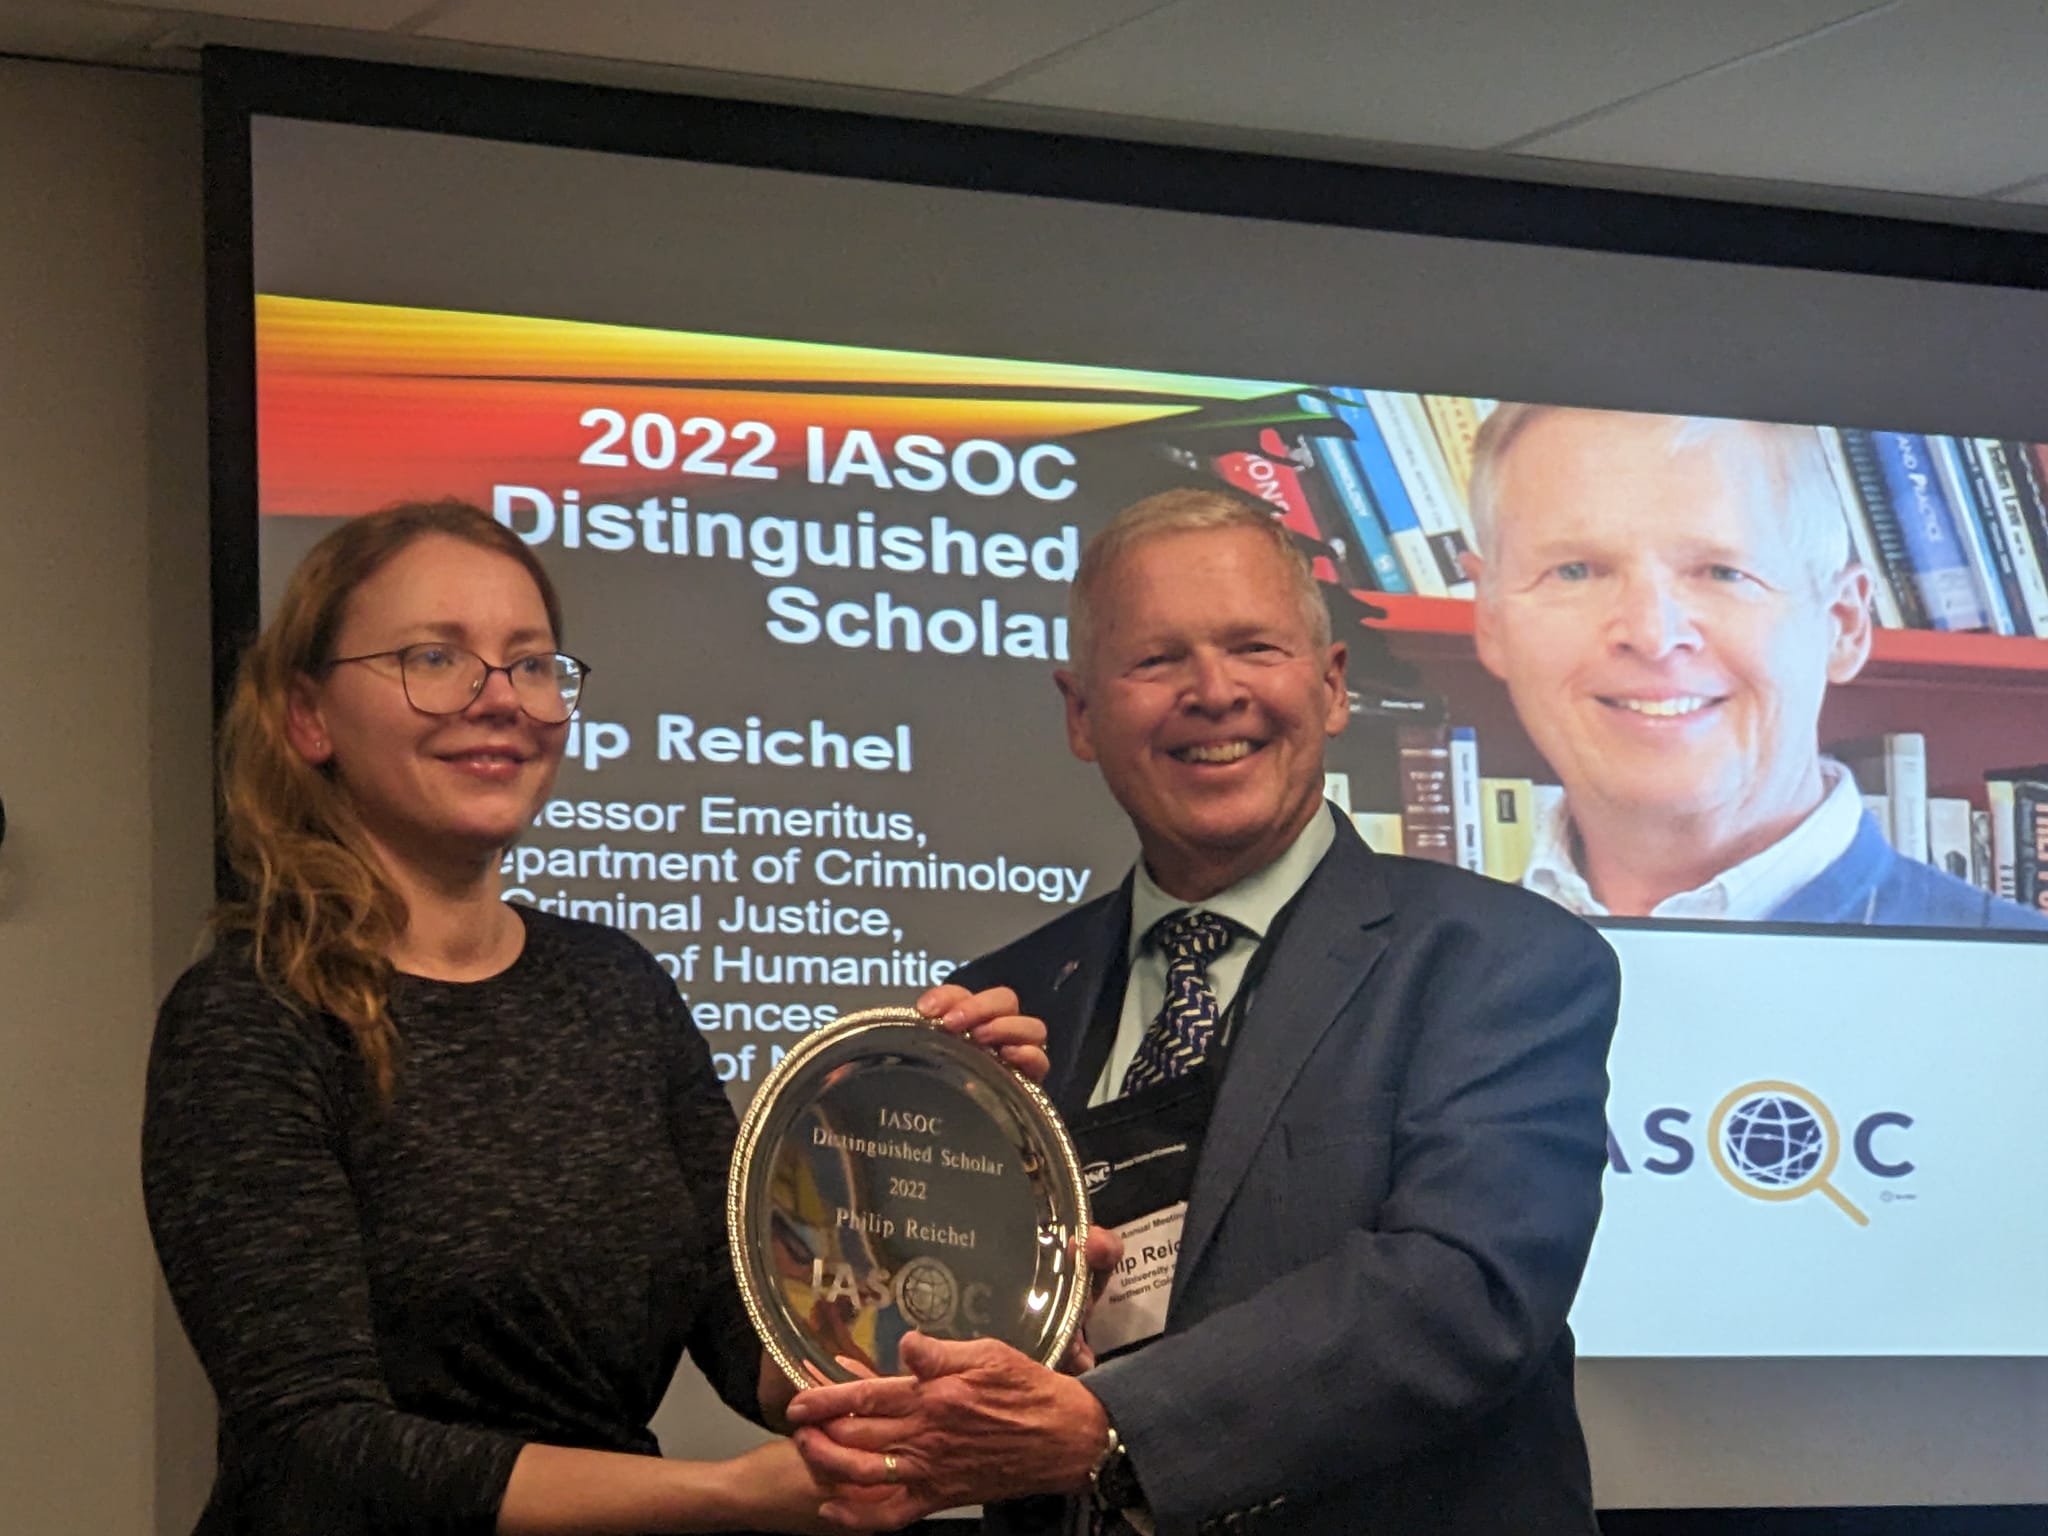 Philip Reichel's Distinguished Scholar Award